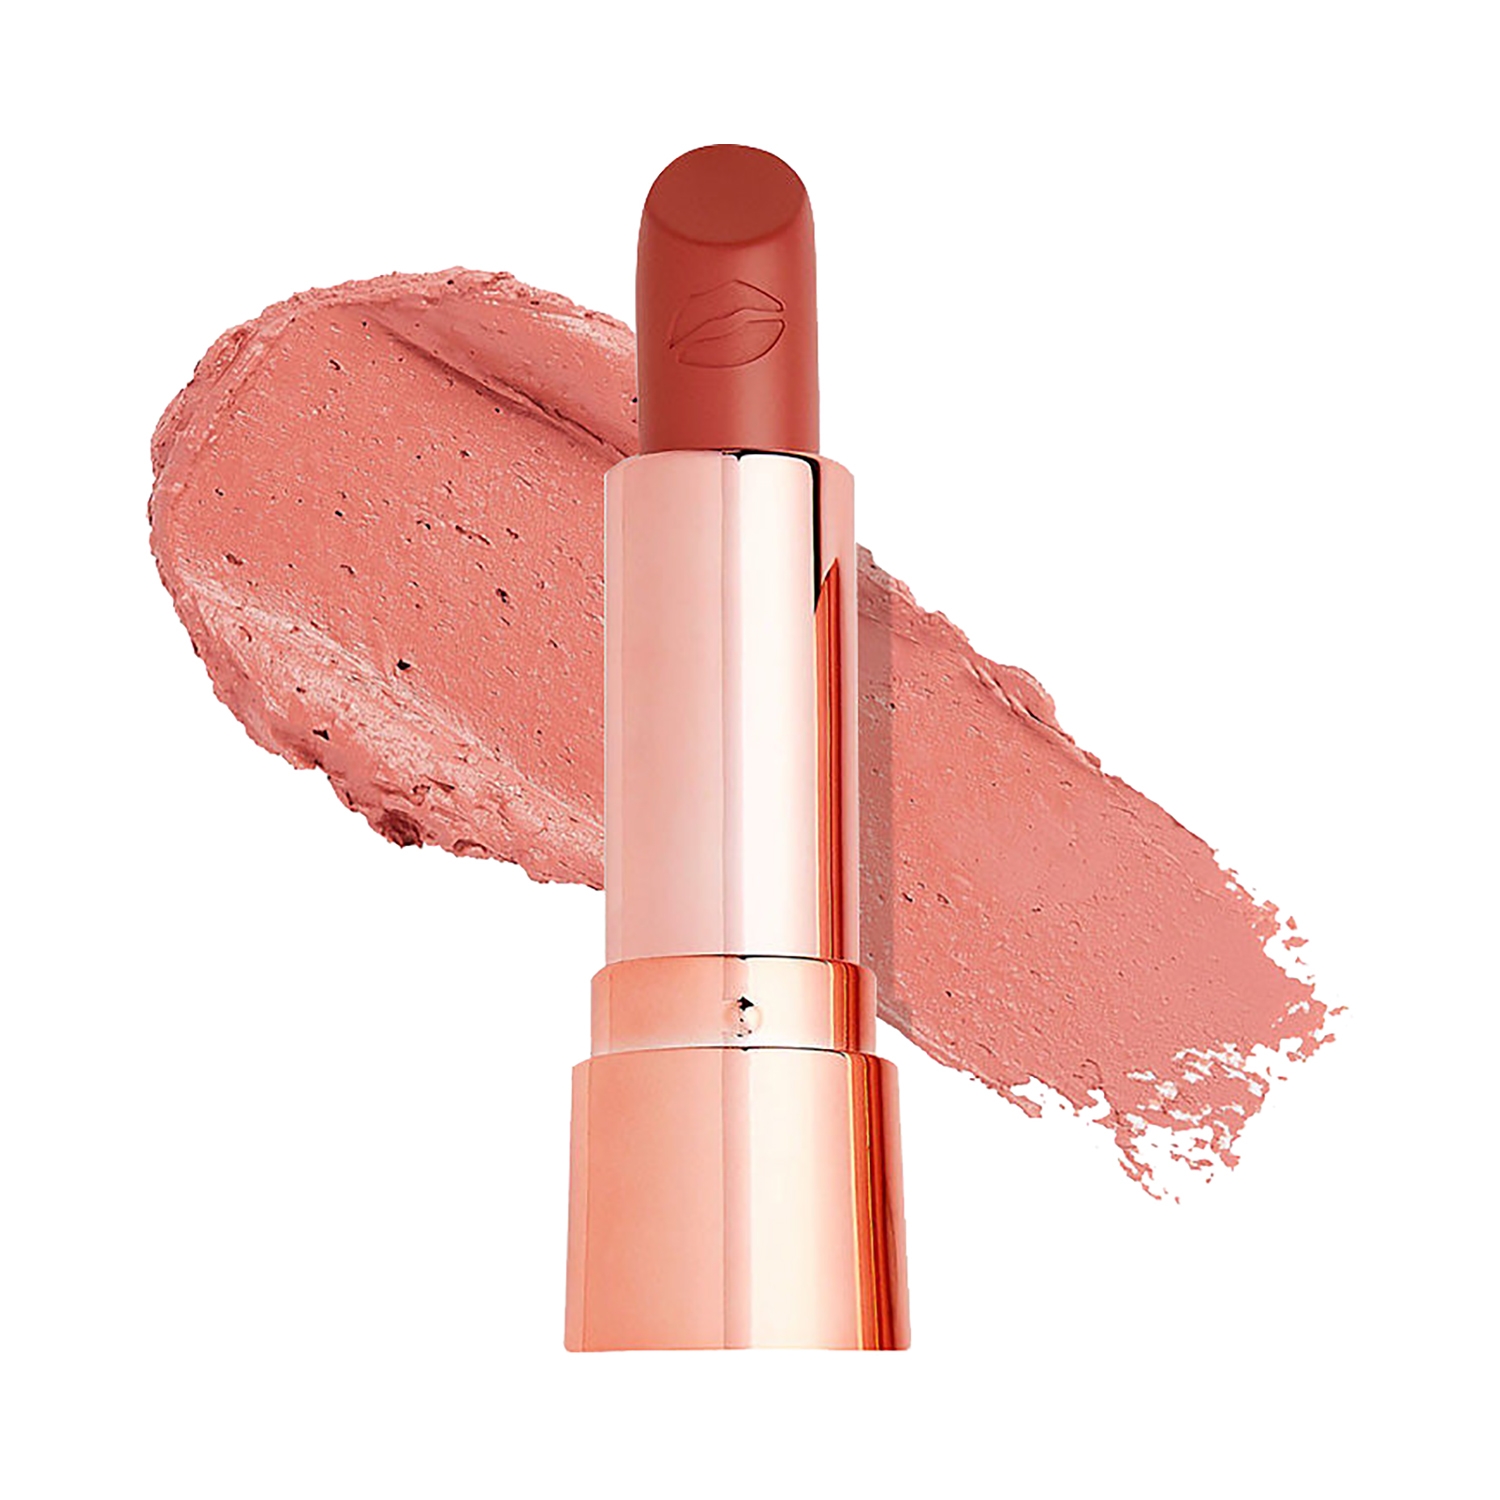 Makeup Revolution | Makeup Revolution Satin Kiss Lipstick - Heart Race Peach Nude (3.5g)